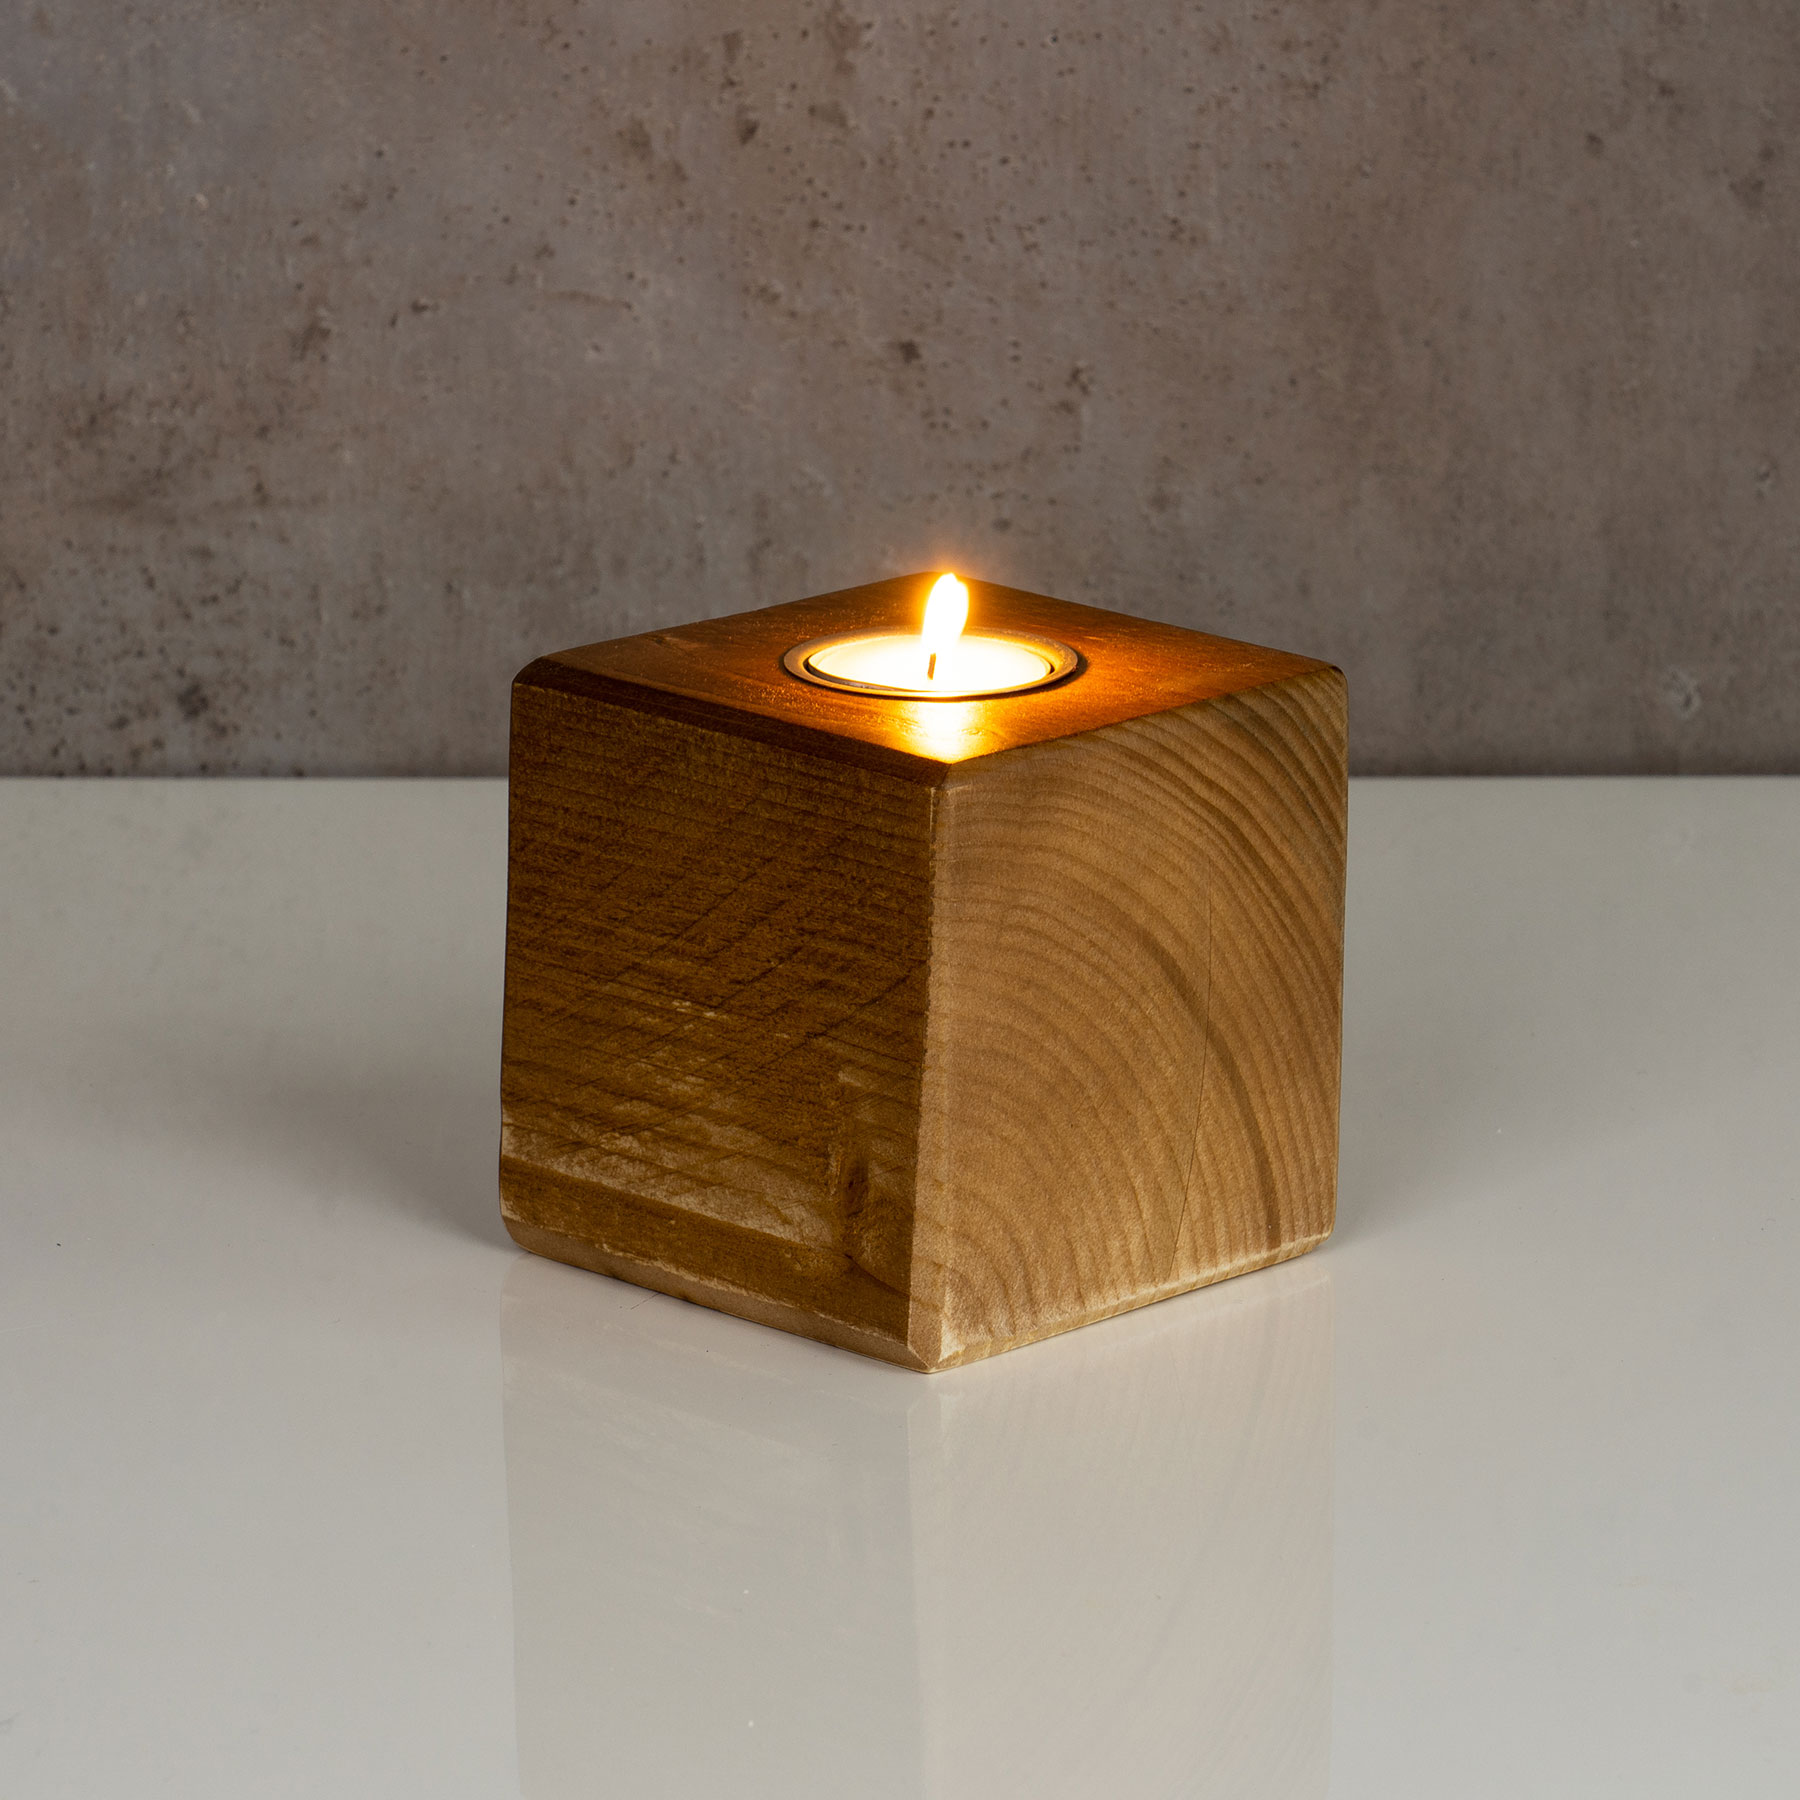 levandeo Teelichthalter Holz Massiv 10x10cm Eiche Farbig Kerzenständer Rustikal